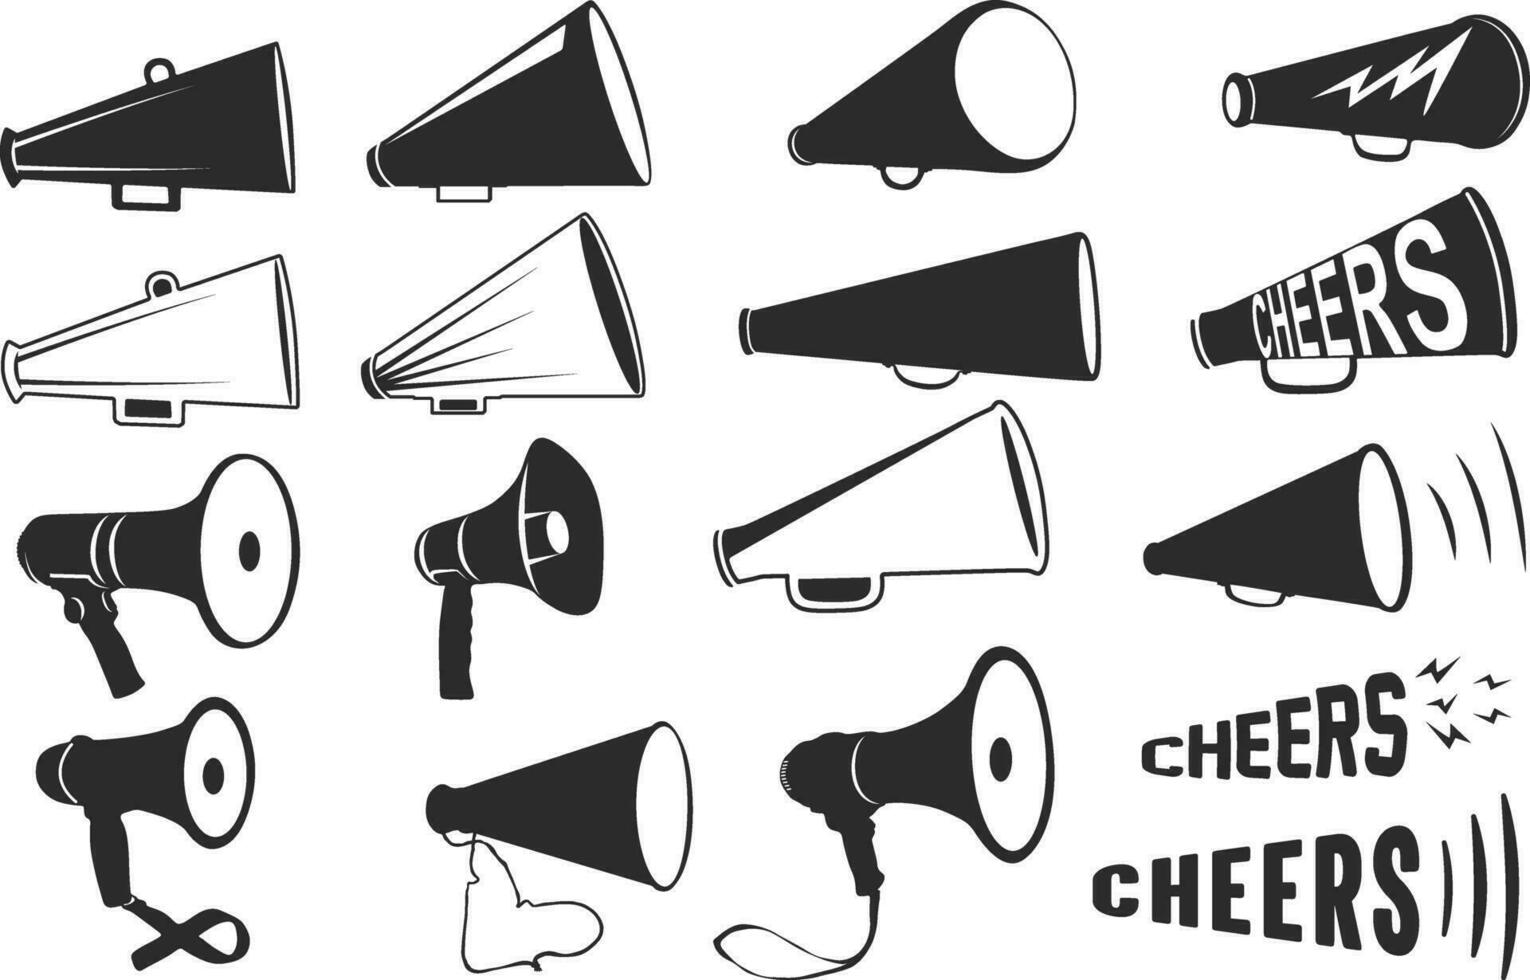 Cheer megaphone silhouette, Cheer megaphone cut files, Cheers silhouette vector